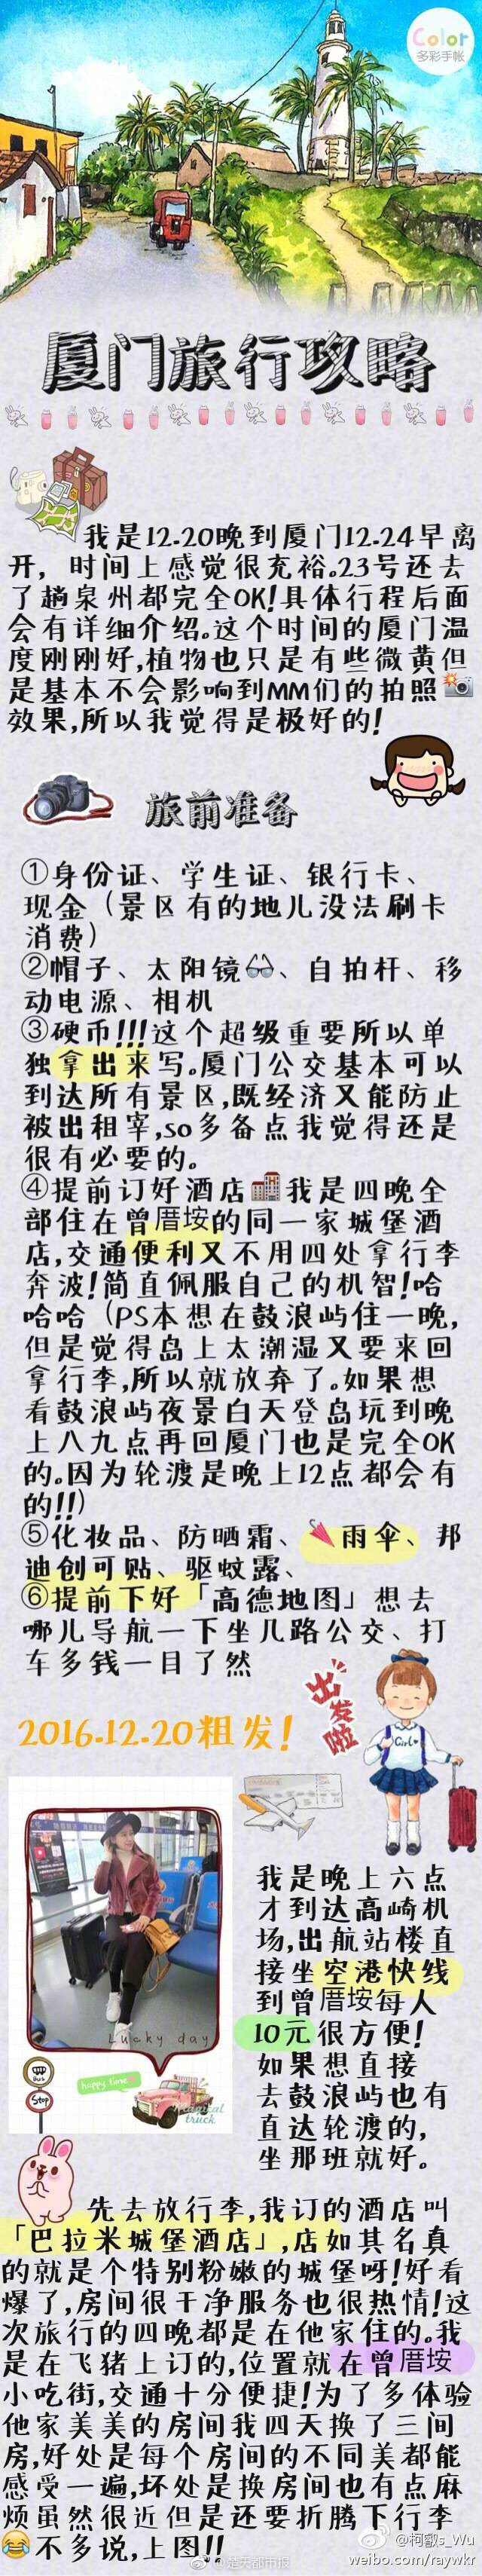 北京多家商场堂食12月21日起不再查验核酸证明